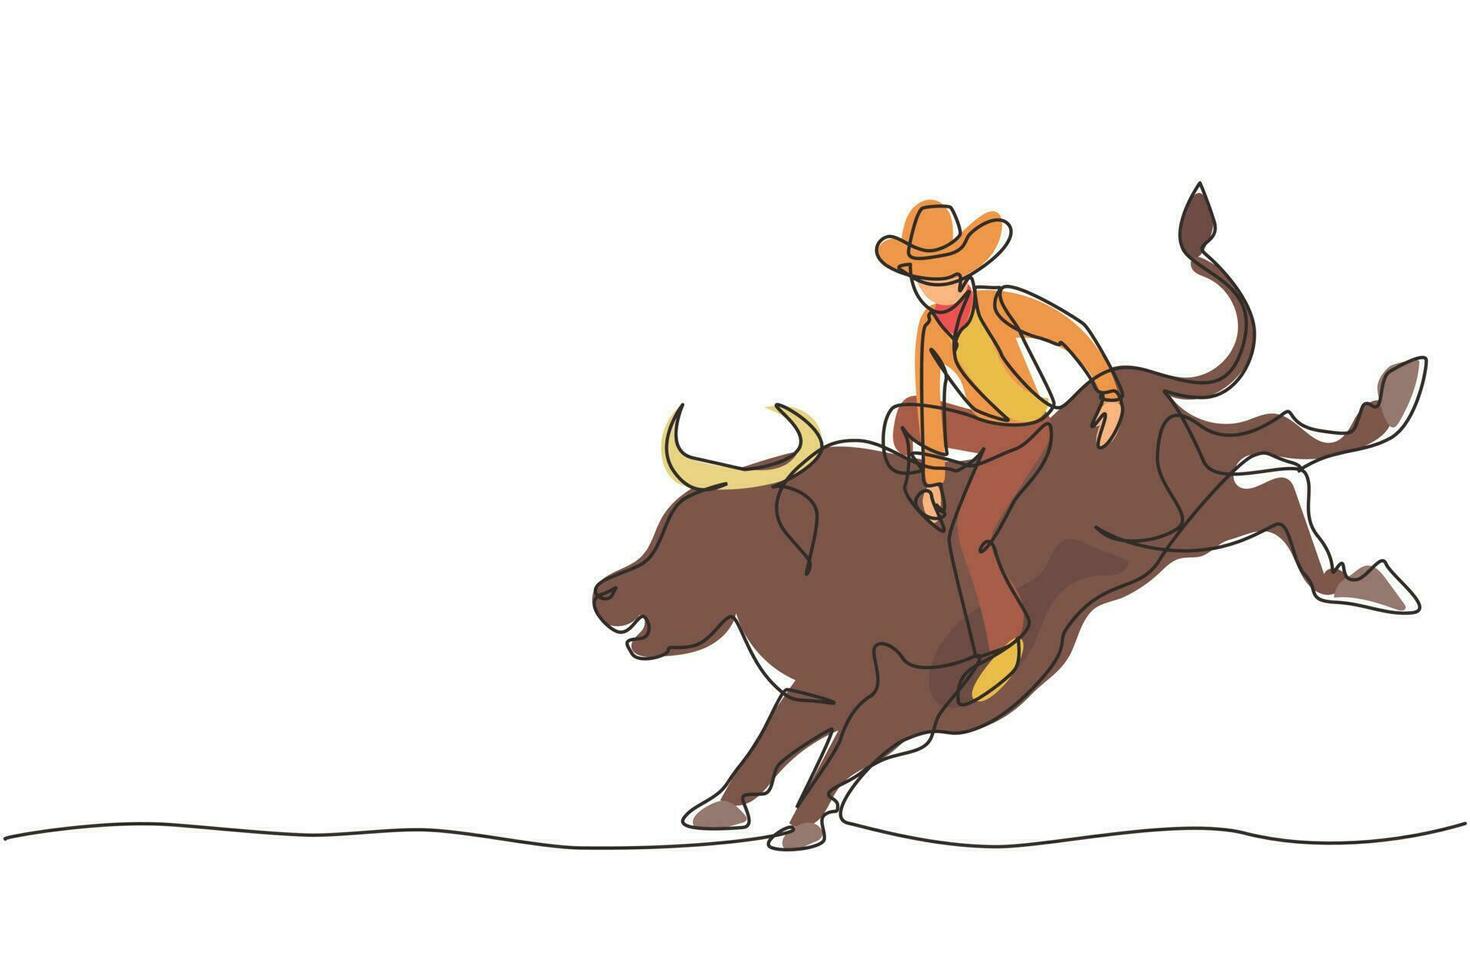 une ligne continue dessinant un cow-boy chevauchant un taureau sauvage pour un spectacle de rodéo passionnant. un cow-boy fort et courageux en chapeau se joint à la compétition de rodéo à cheval sur un taureau sauvage. illustration graphique vectorielle de conception à une seule ligne vecteur